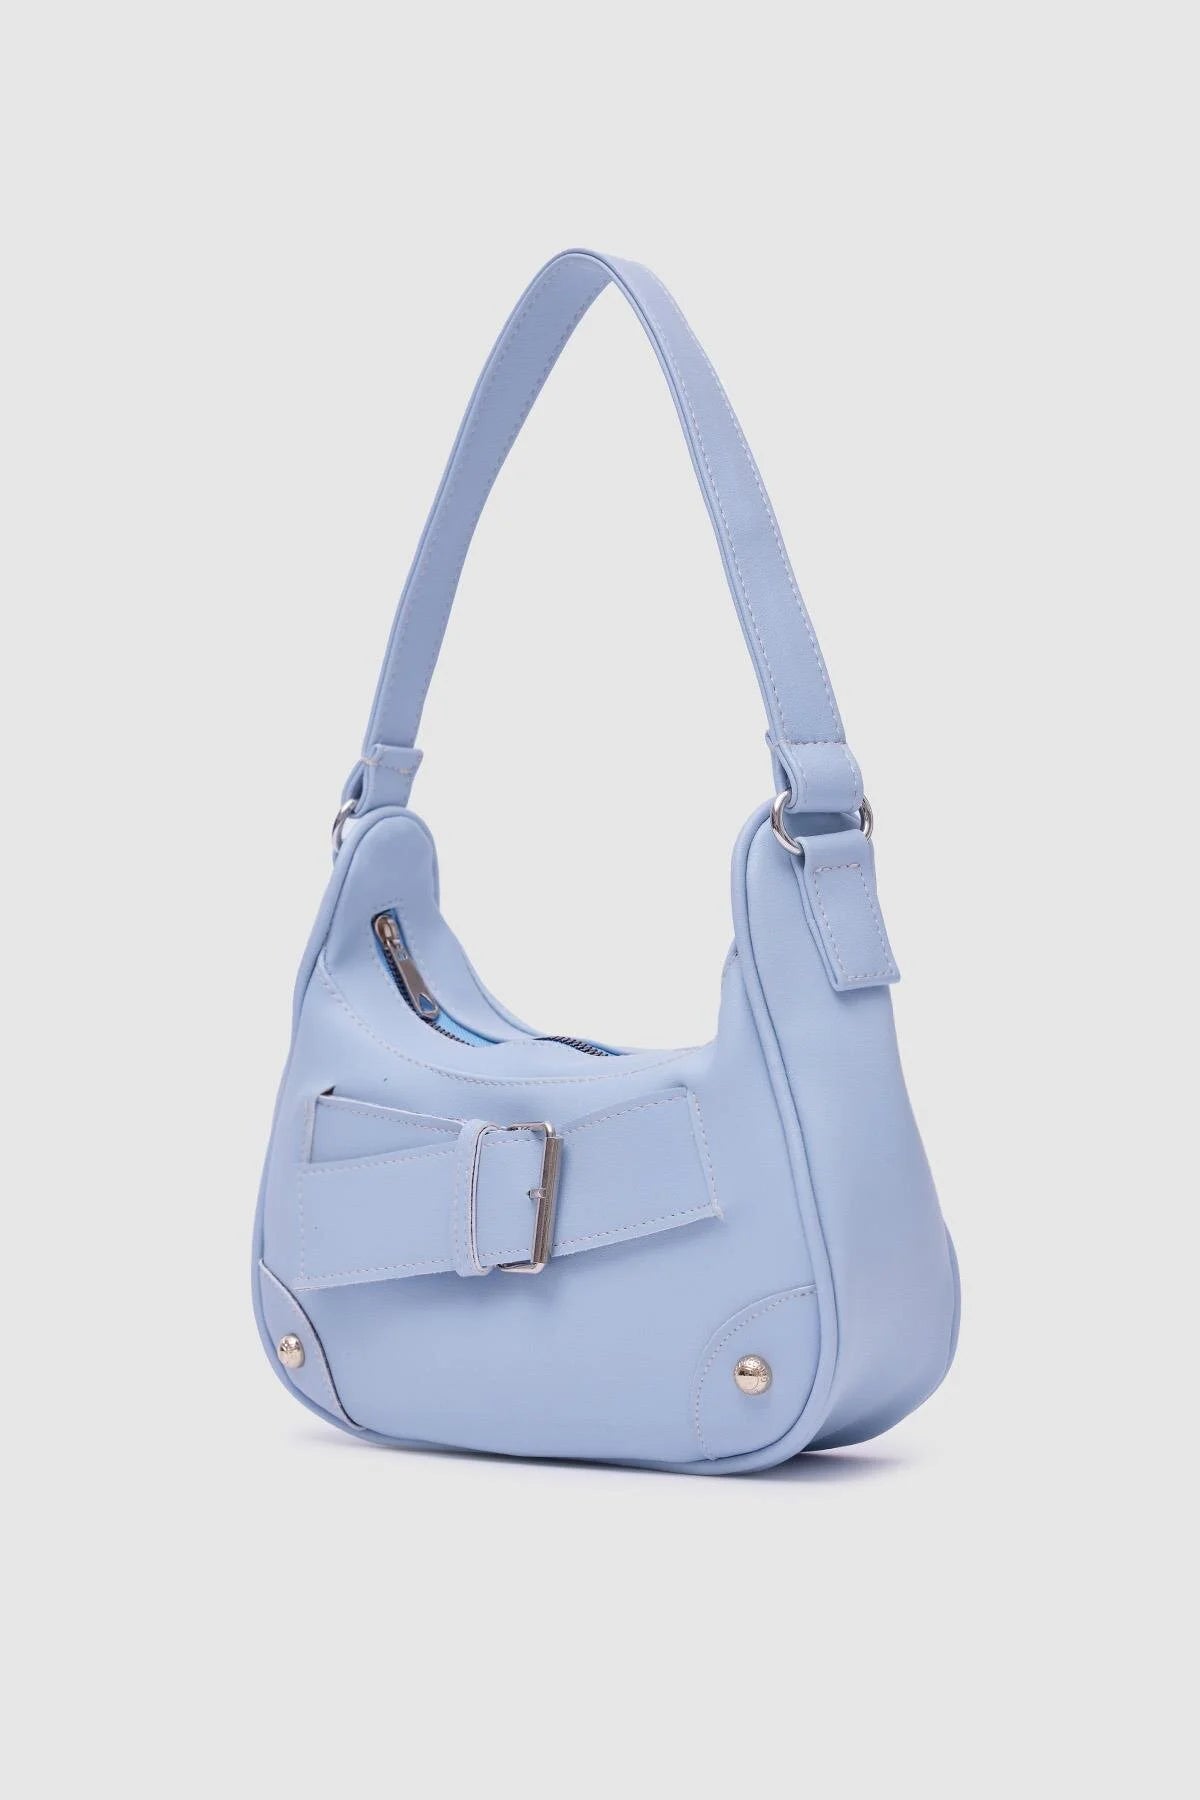 Buckled Faux Leather Baby Blue Baguette Bag bag LUNARITY GARAGE   